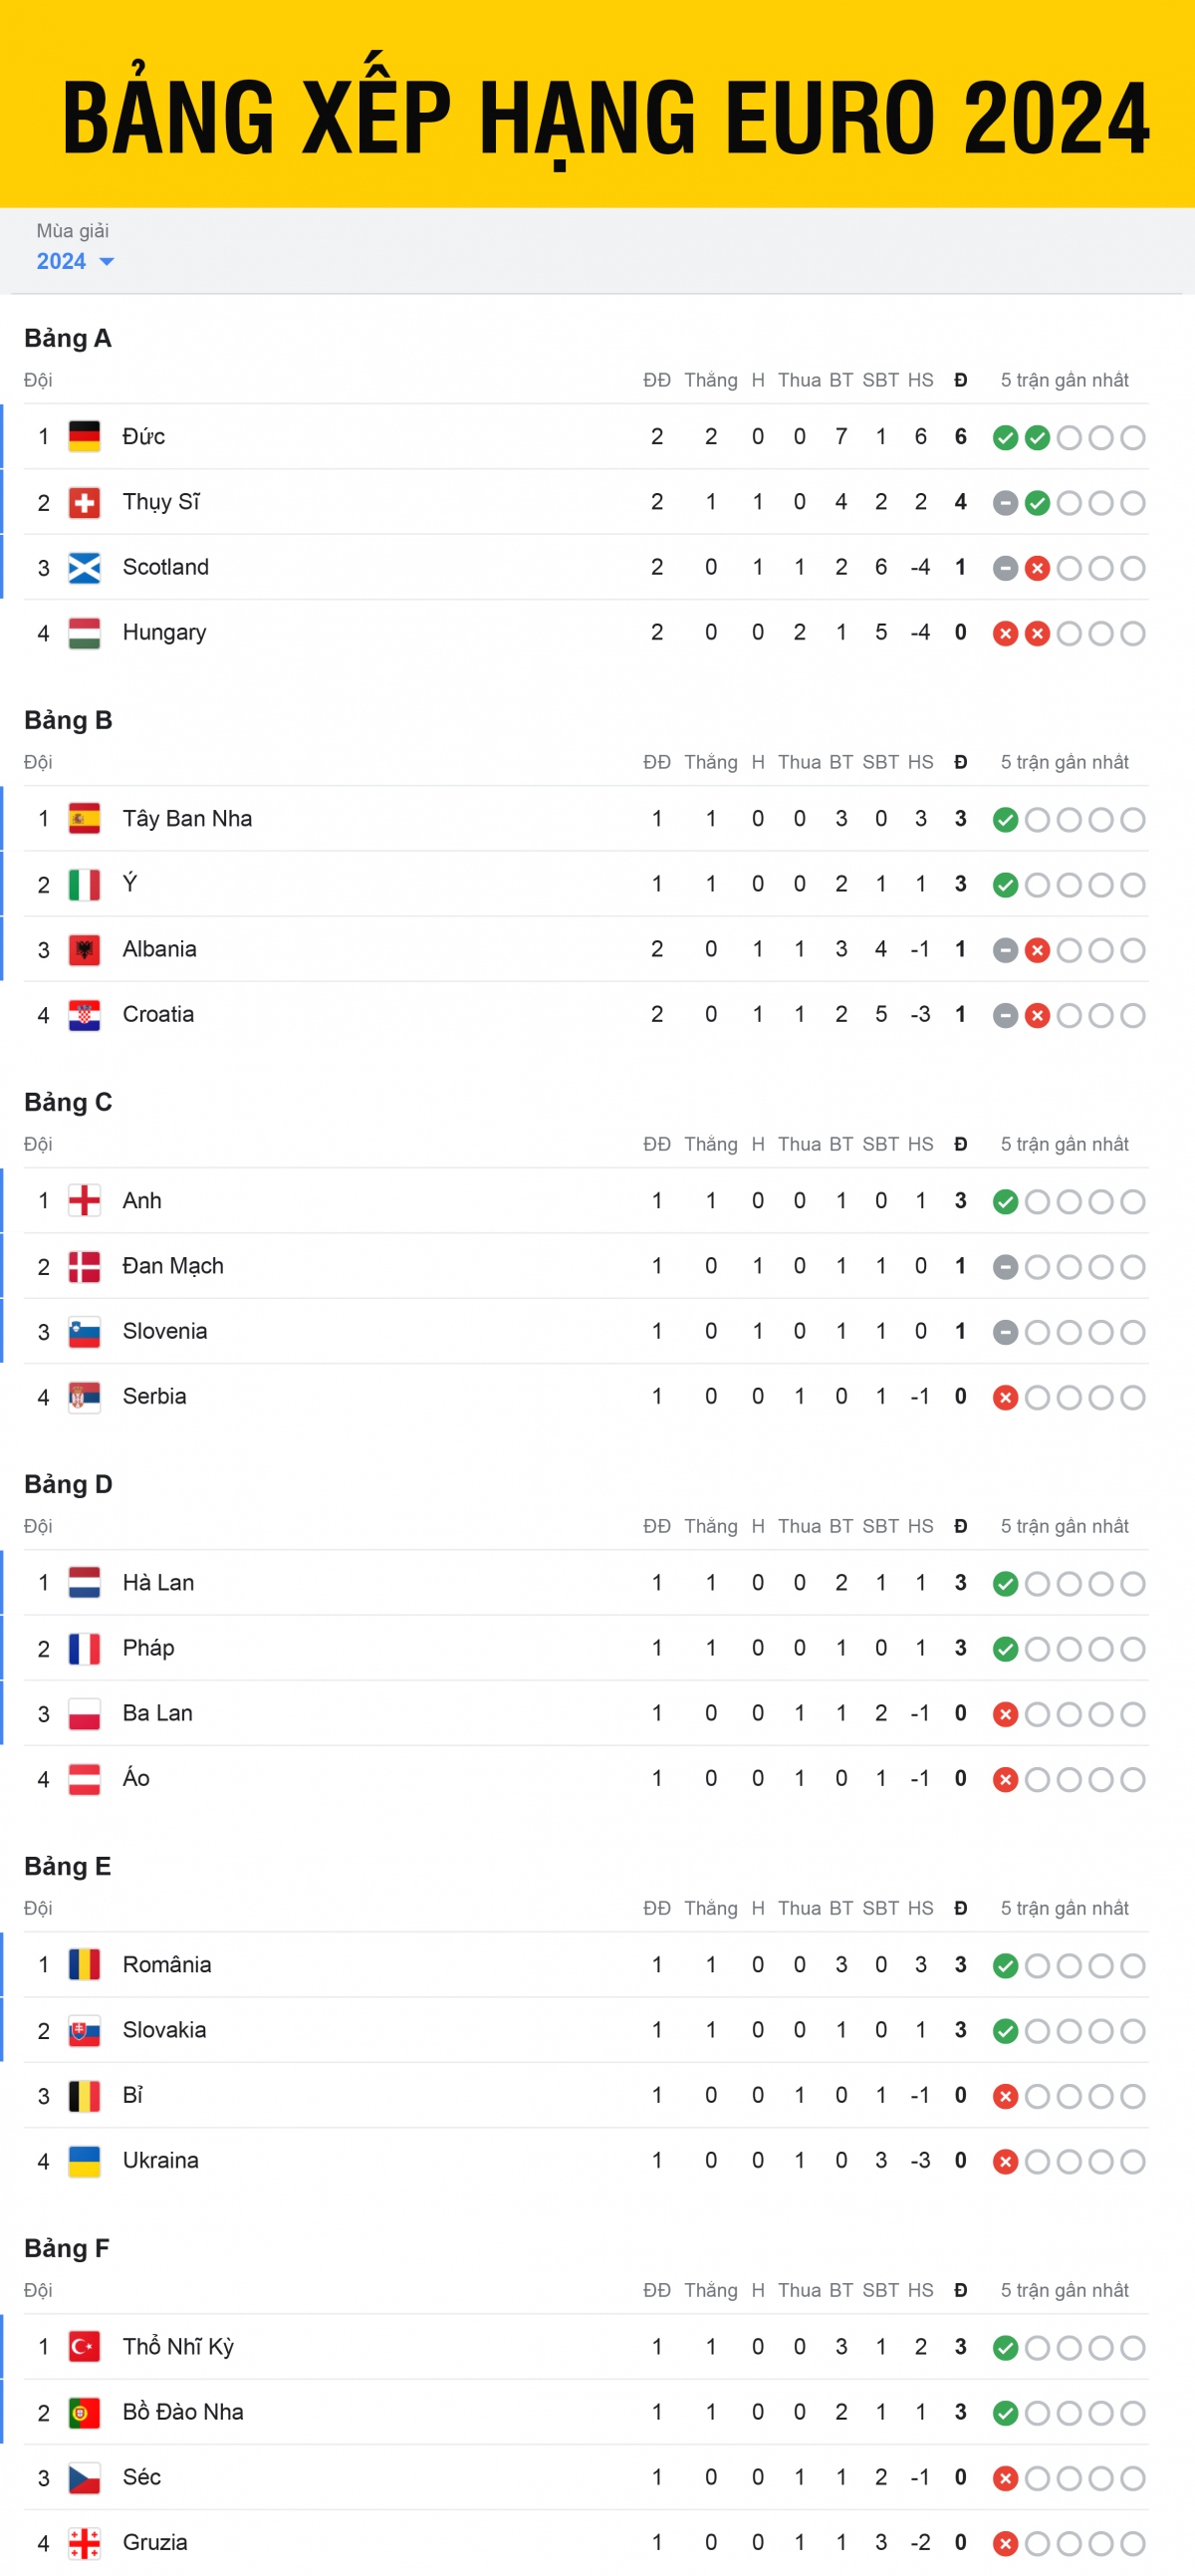 Bảng xếp hạng EURO 2024 mới nhất: Đức giành vé vào vòng 1/8